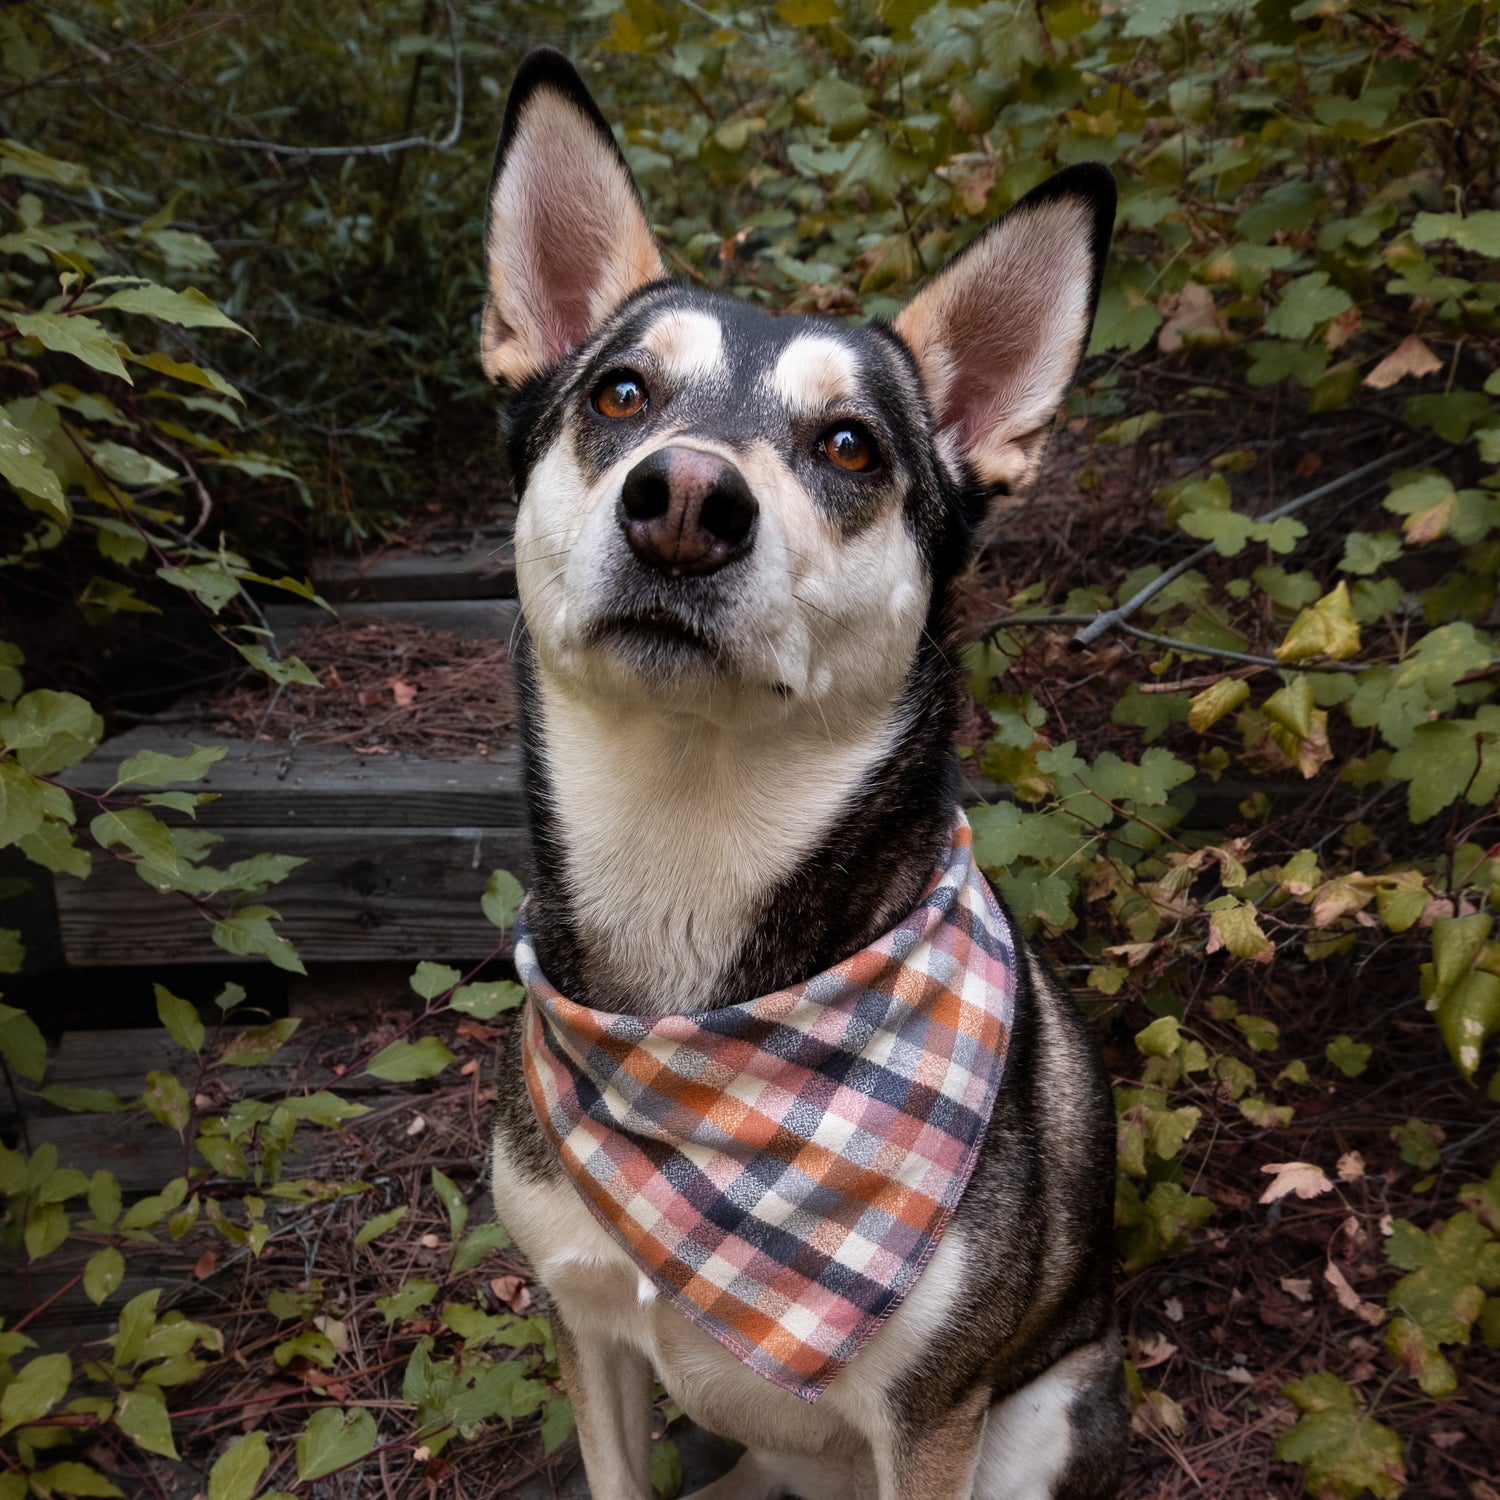 The Chili Wrap Dog Collar / Aztec Dog Collar / Dog Collars 